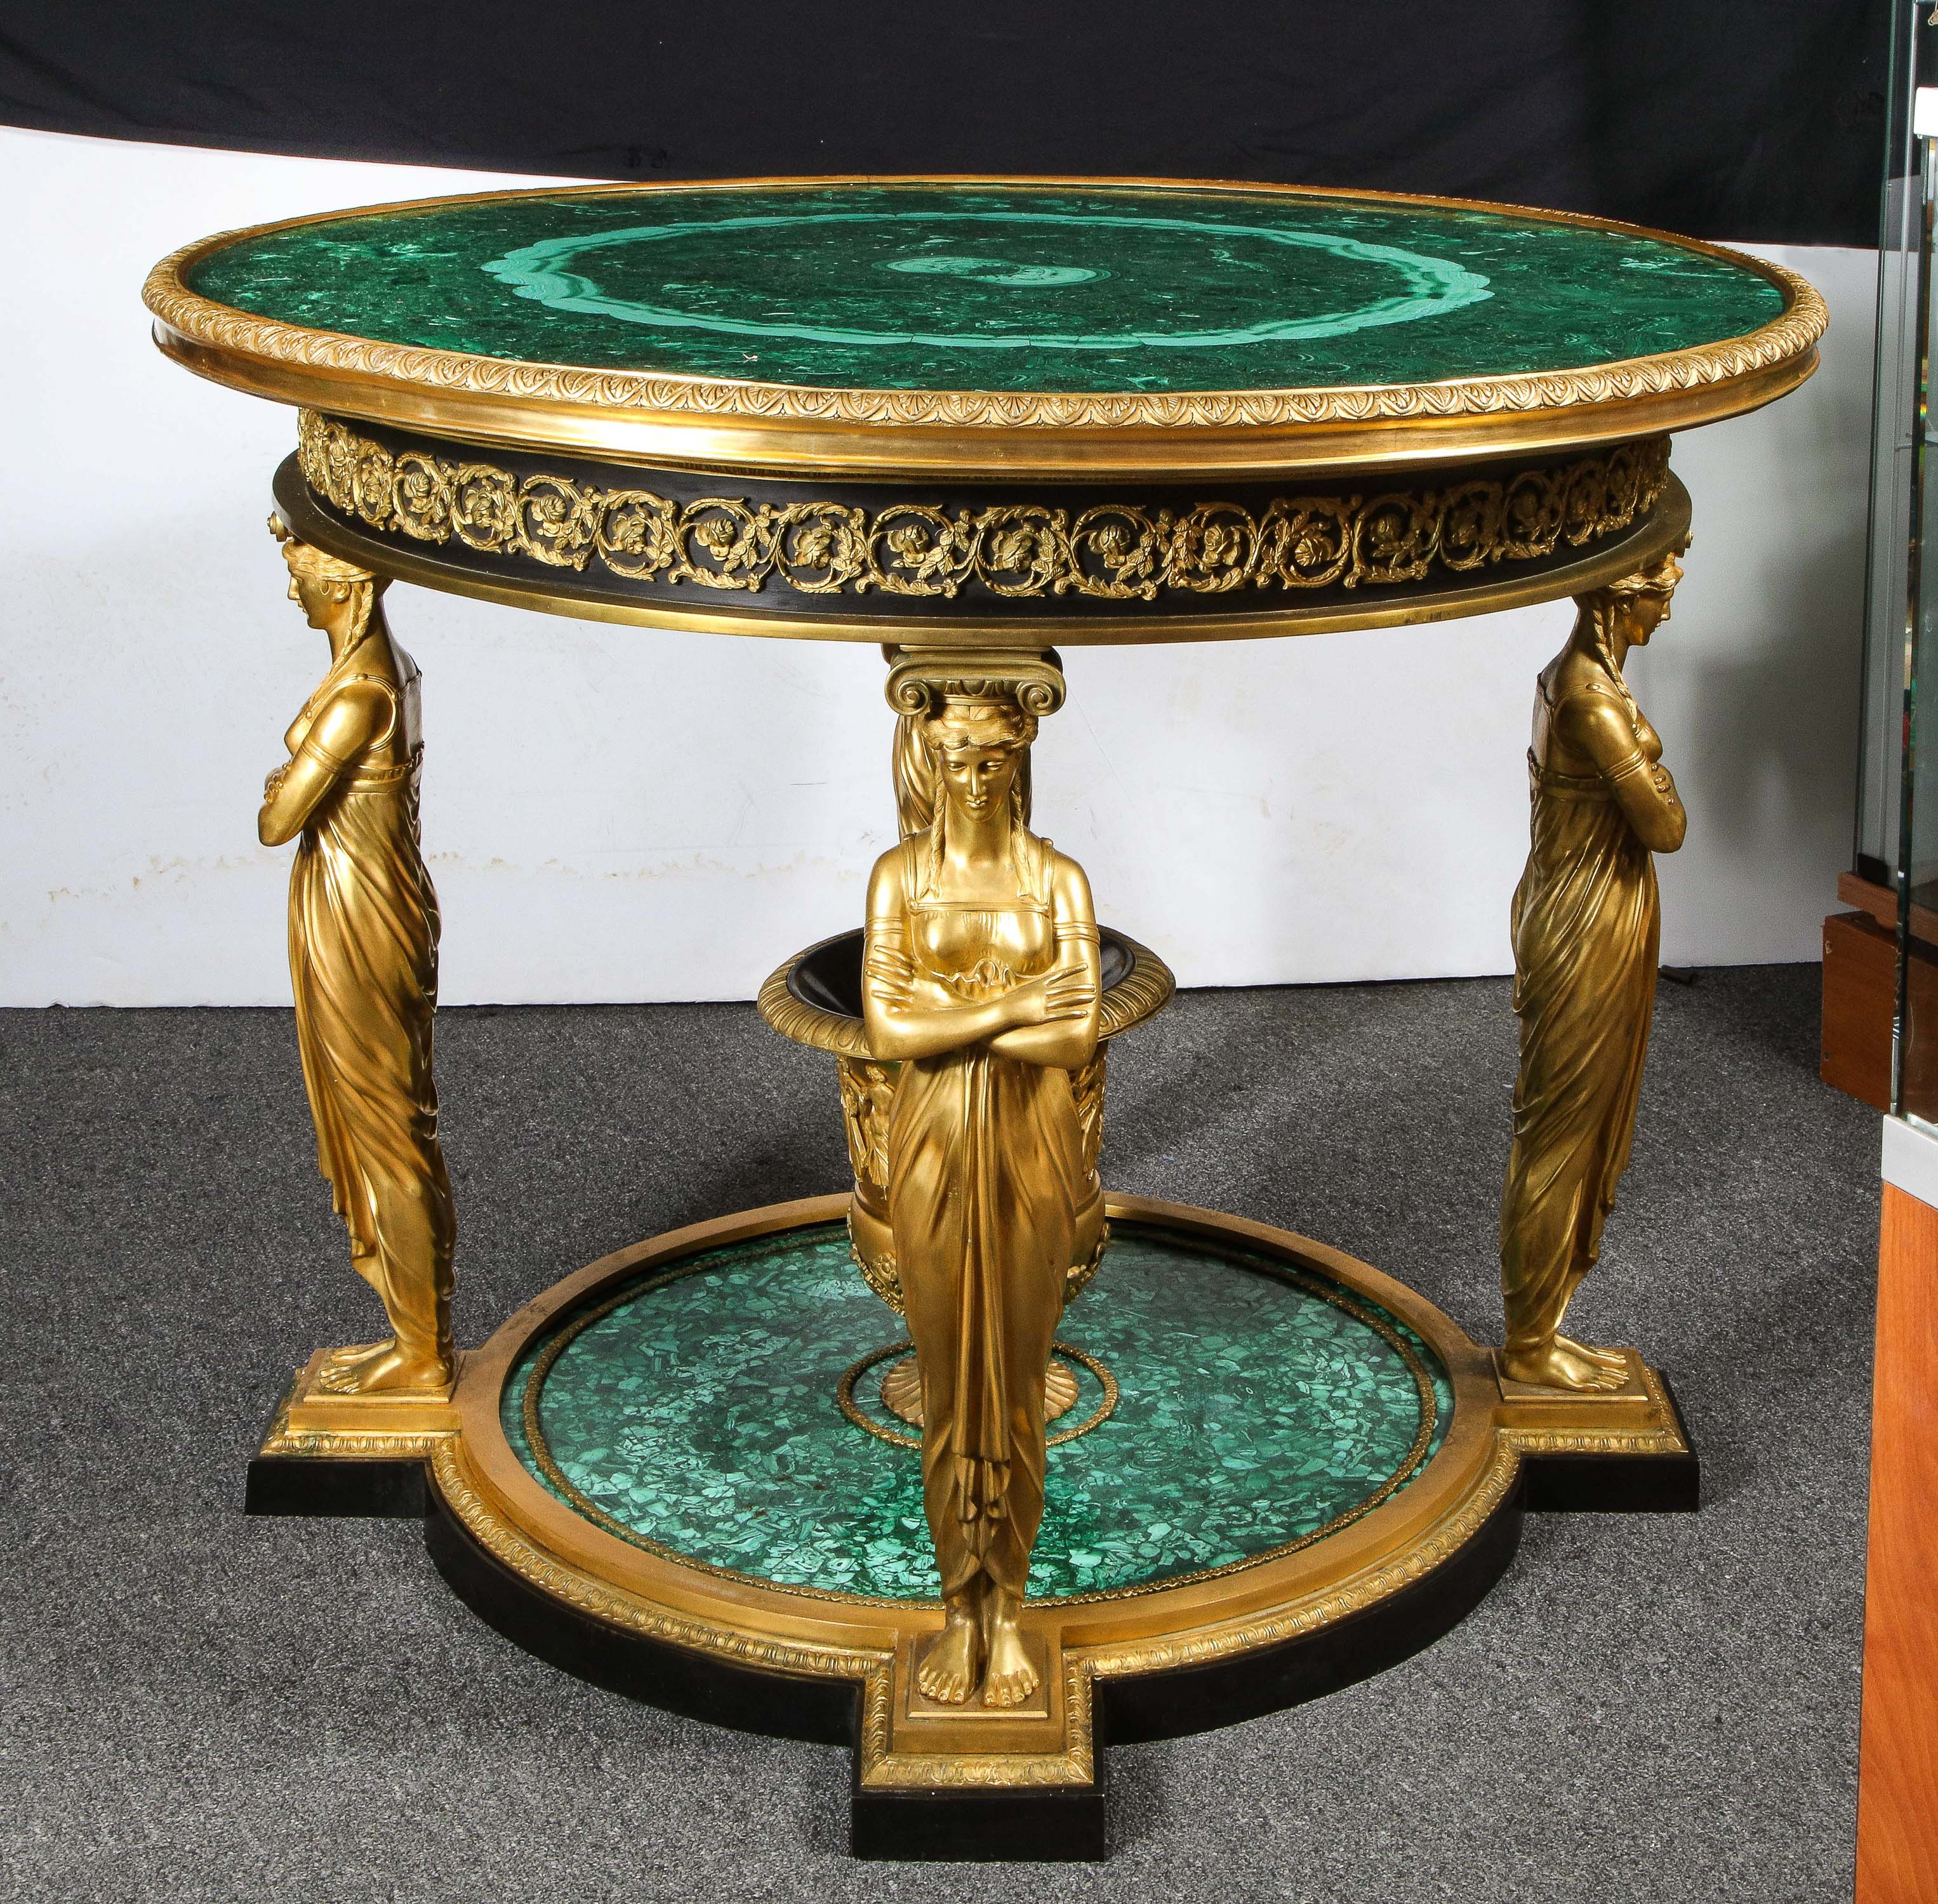 Une impressionnante table centrale de style empire en malachite et bronze doré d'après le modèle impérial de Francois Honore Georges Jacob-Desmalter, 1770-1841.

